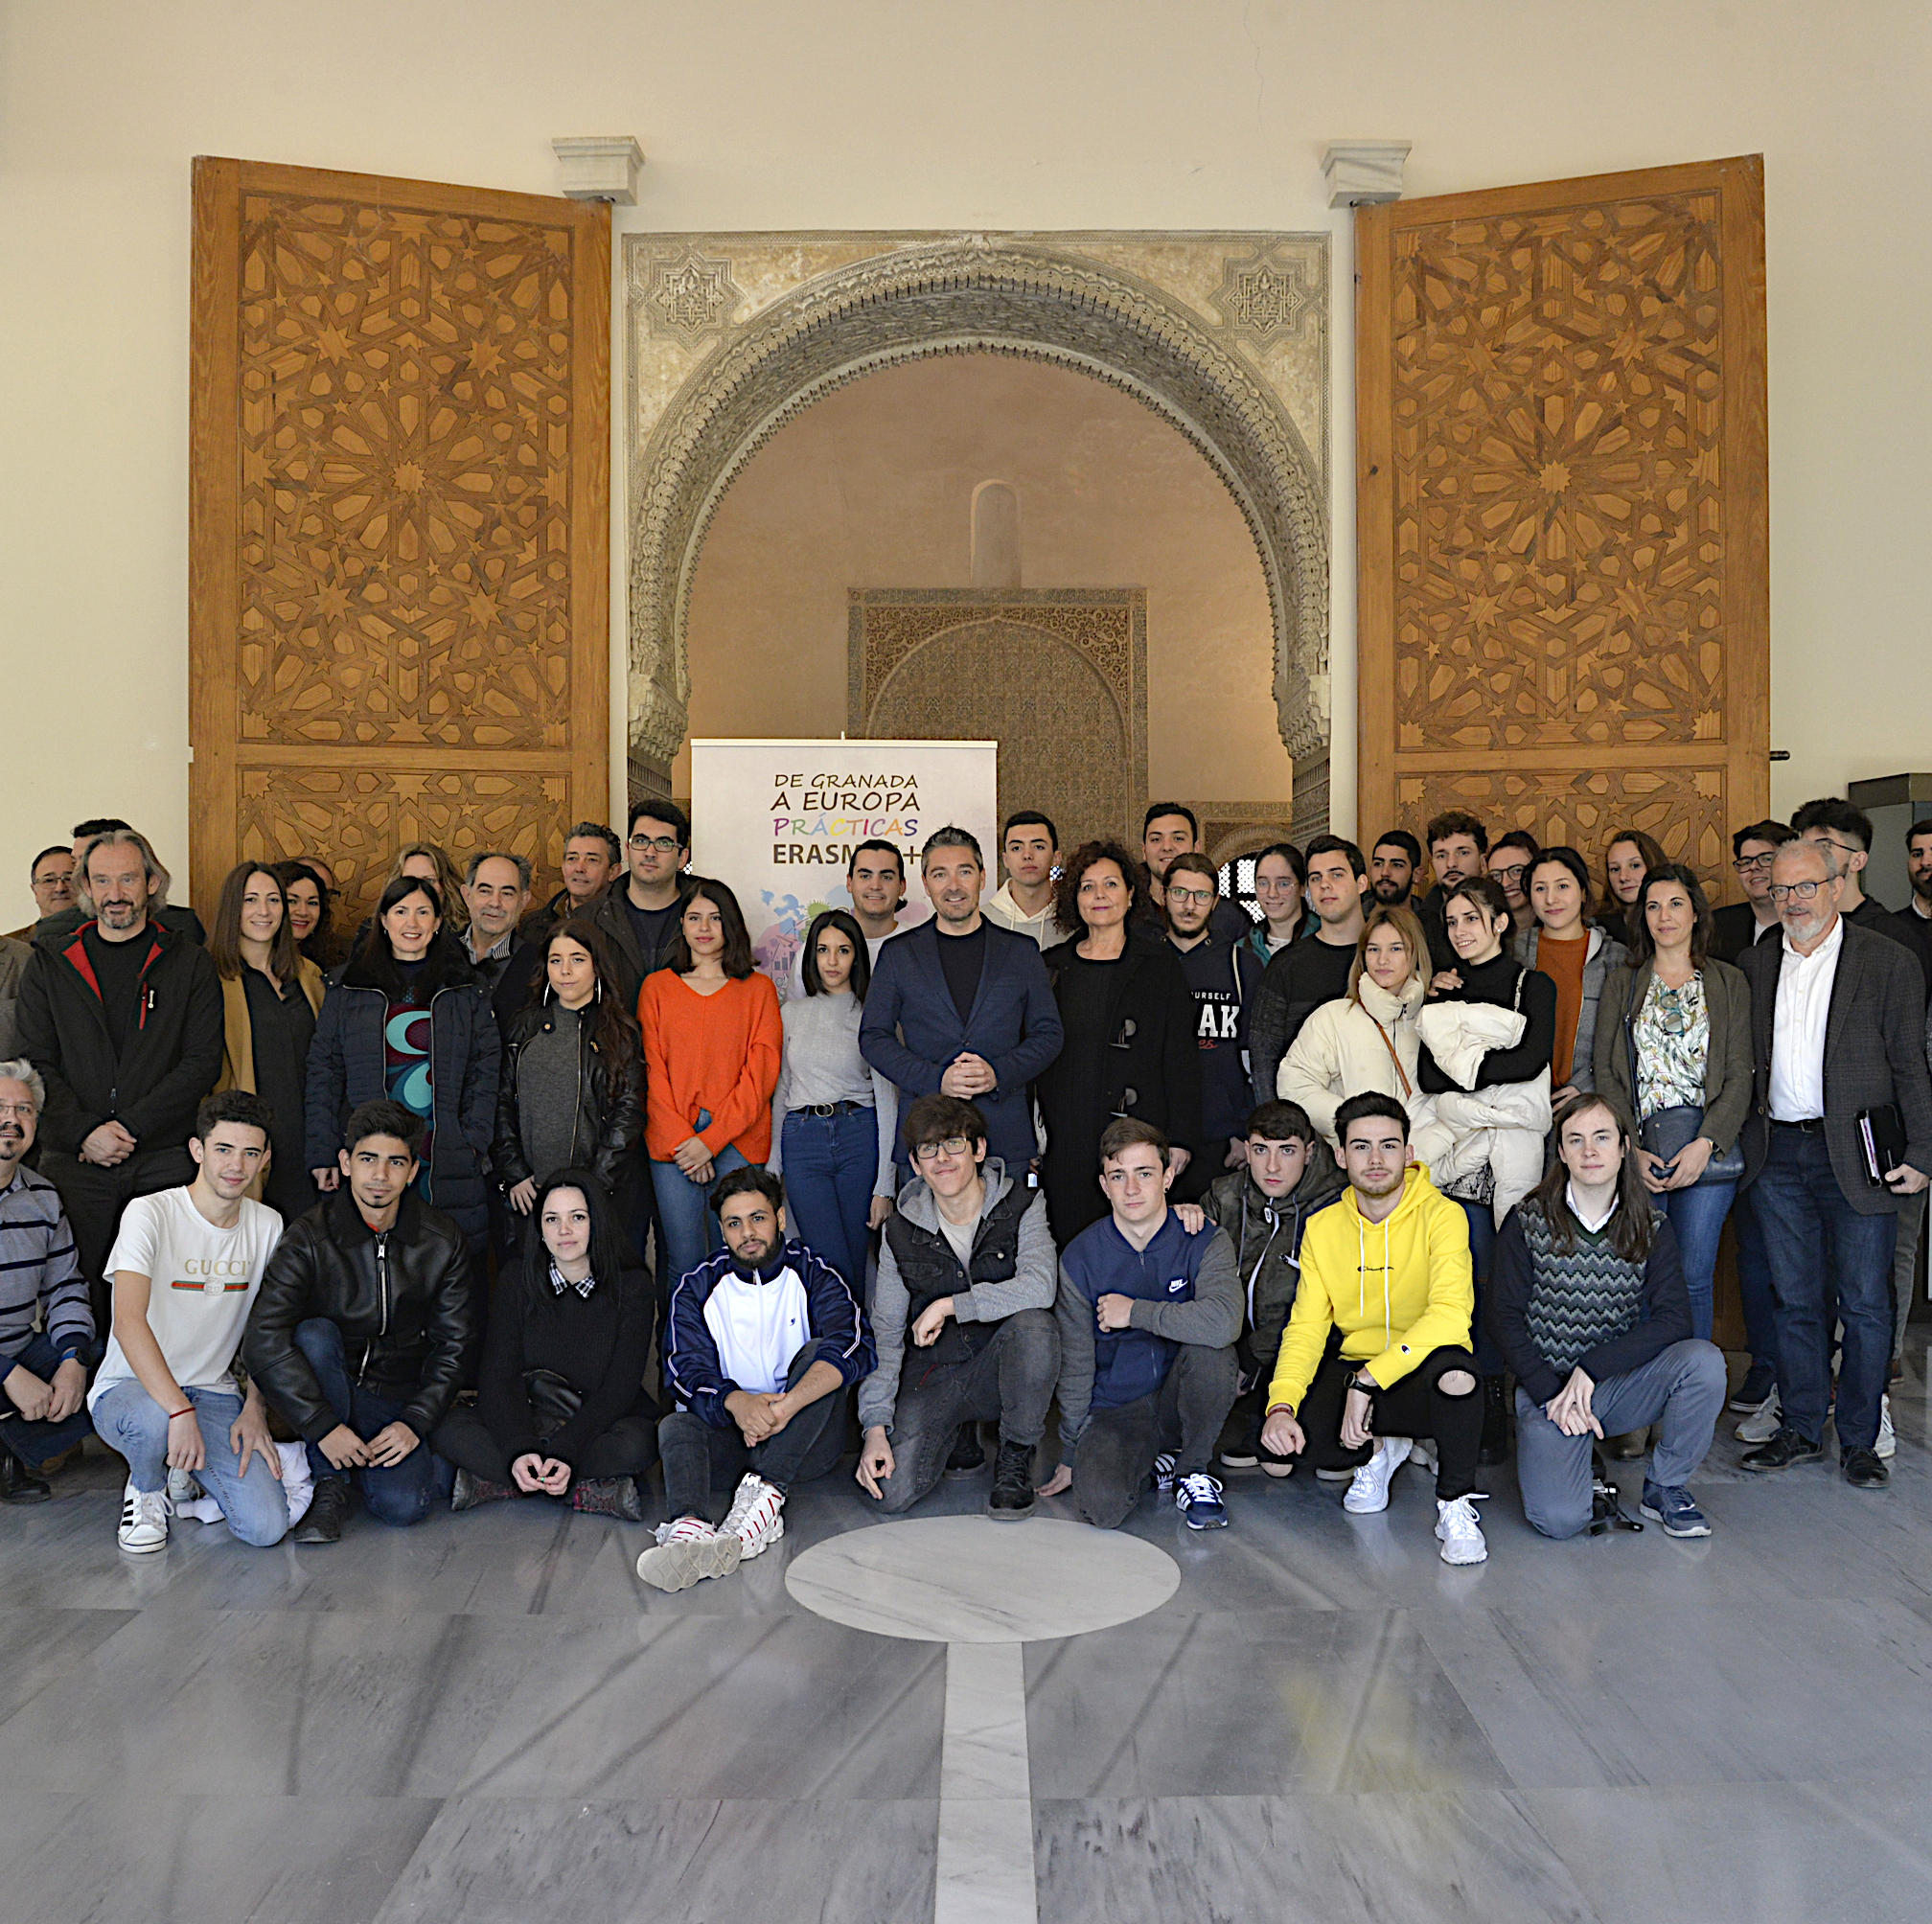 ©Ayto.Granada: El Cuarto Real acoge el acto de entrega de diplomas a los jvenes participantes en el primer programa de Movilidad Europea Erasmus Granada FP Share +